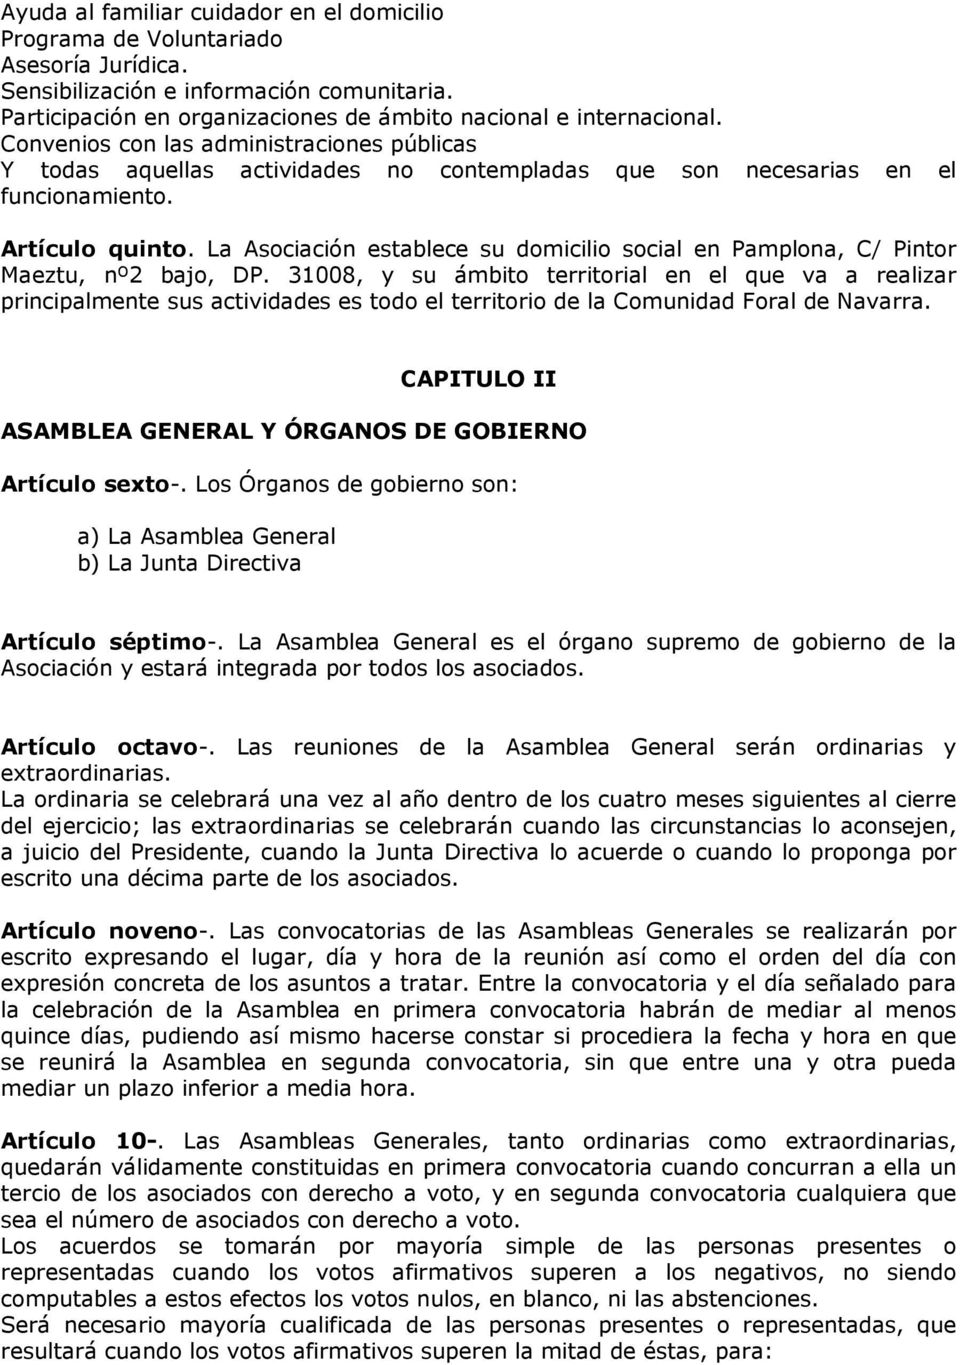 La Asociación establece su domicilio social en Pamplona, C/ Pintor Maeztu, nº2 bajo, DP.